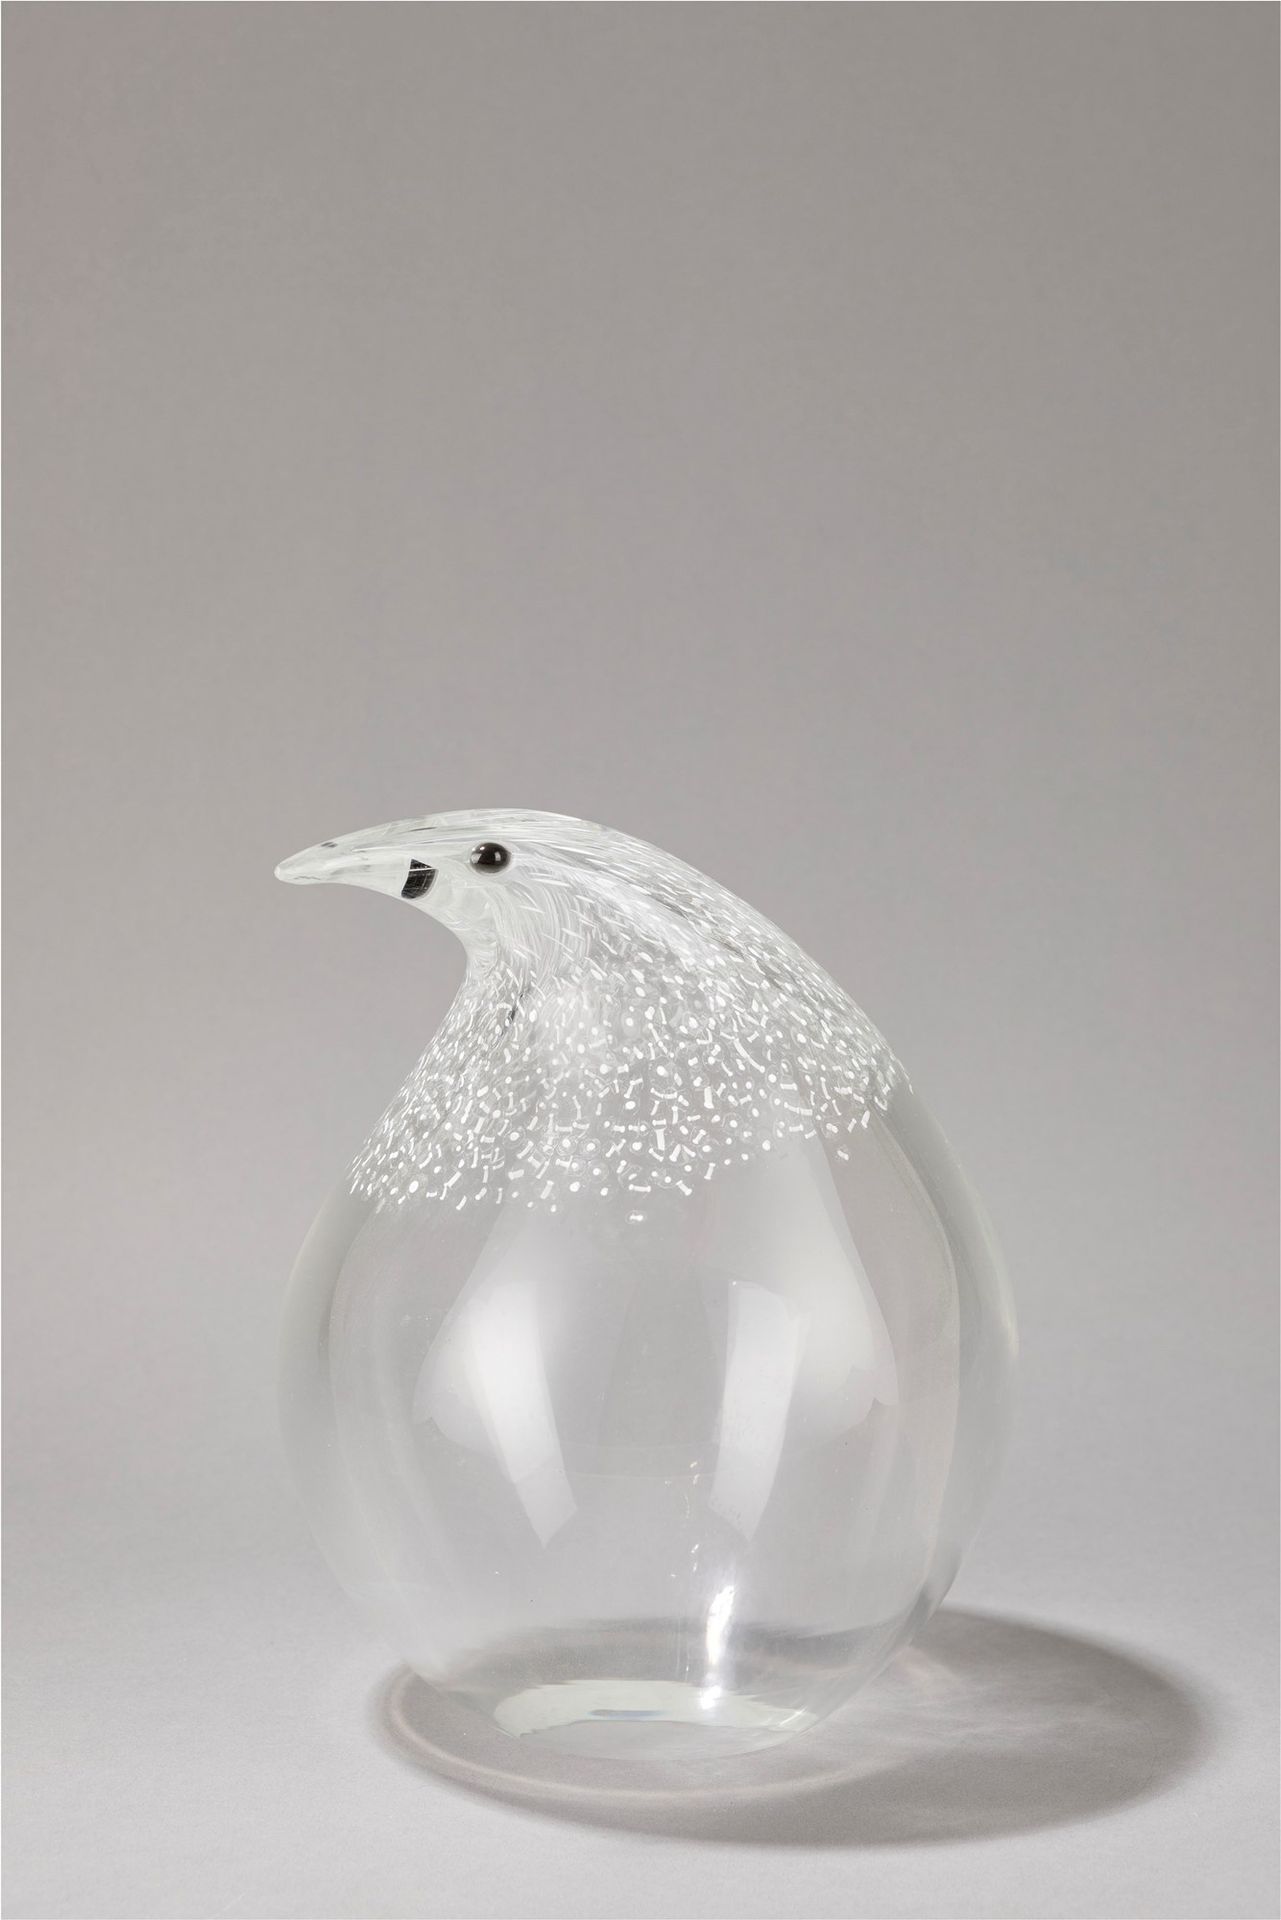 SEGUSO 花瓶

h 25 cm
穆拉诺吹制玻璃。

Seguso Vetri d'Arte制造